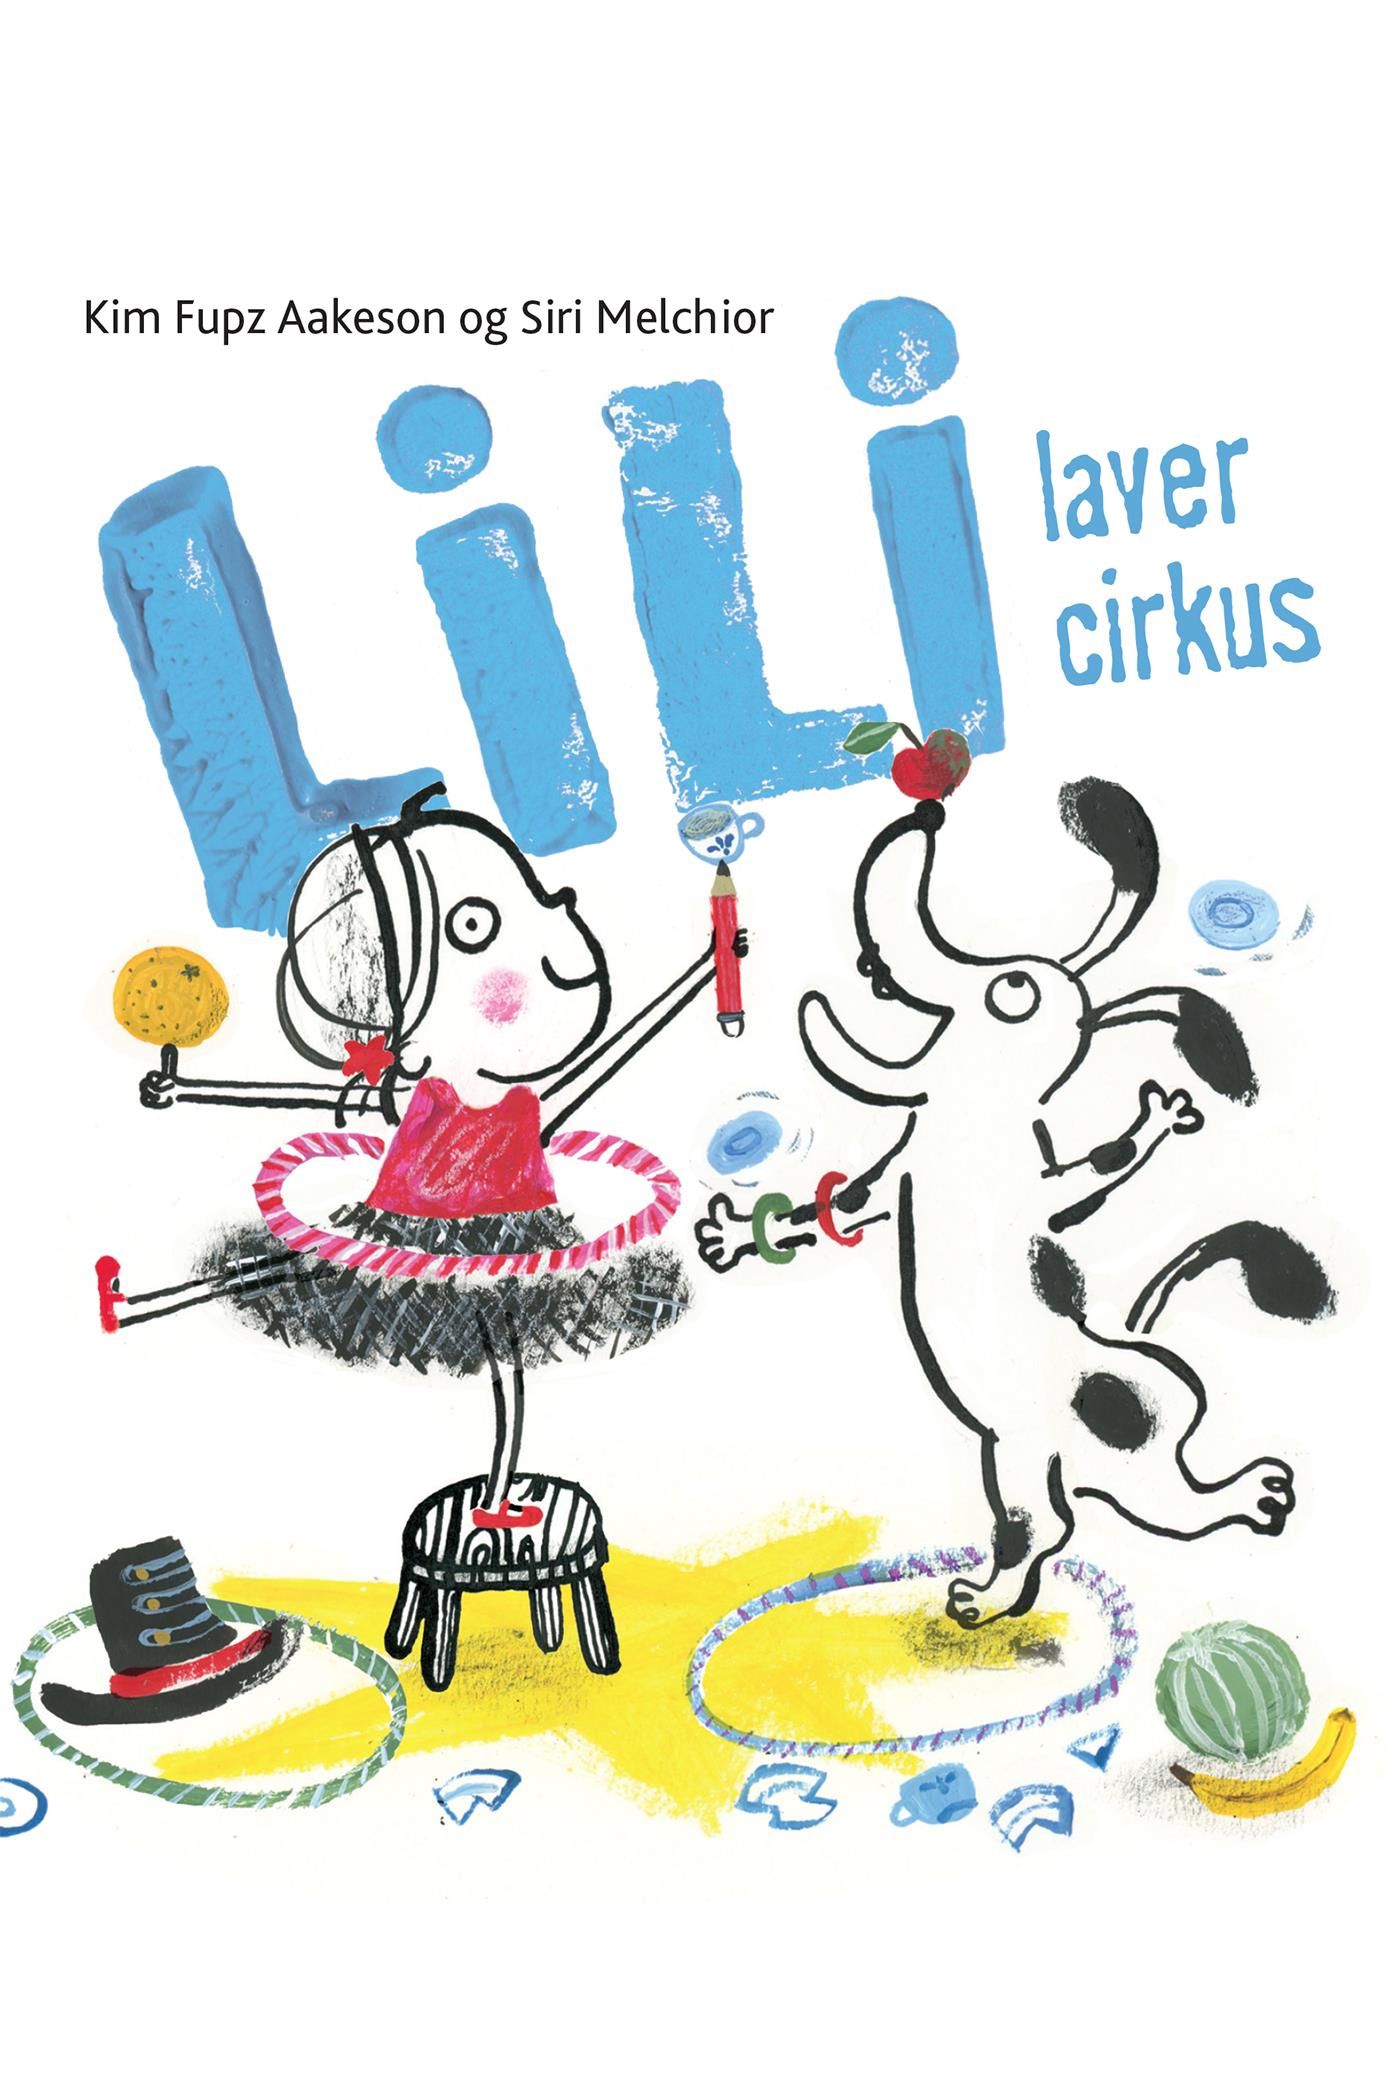 Lili laver cirkus - Lyt& Læs, e-bog af Siri Melchior, Kim Fupz Aakeson